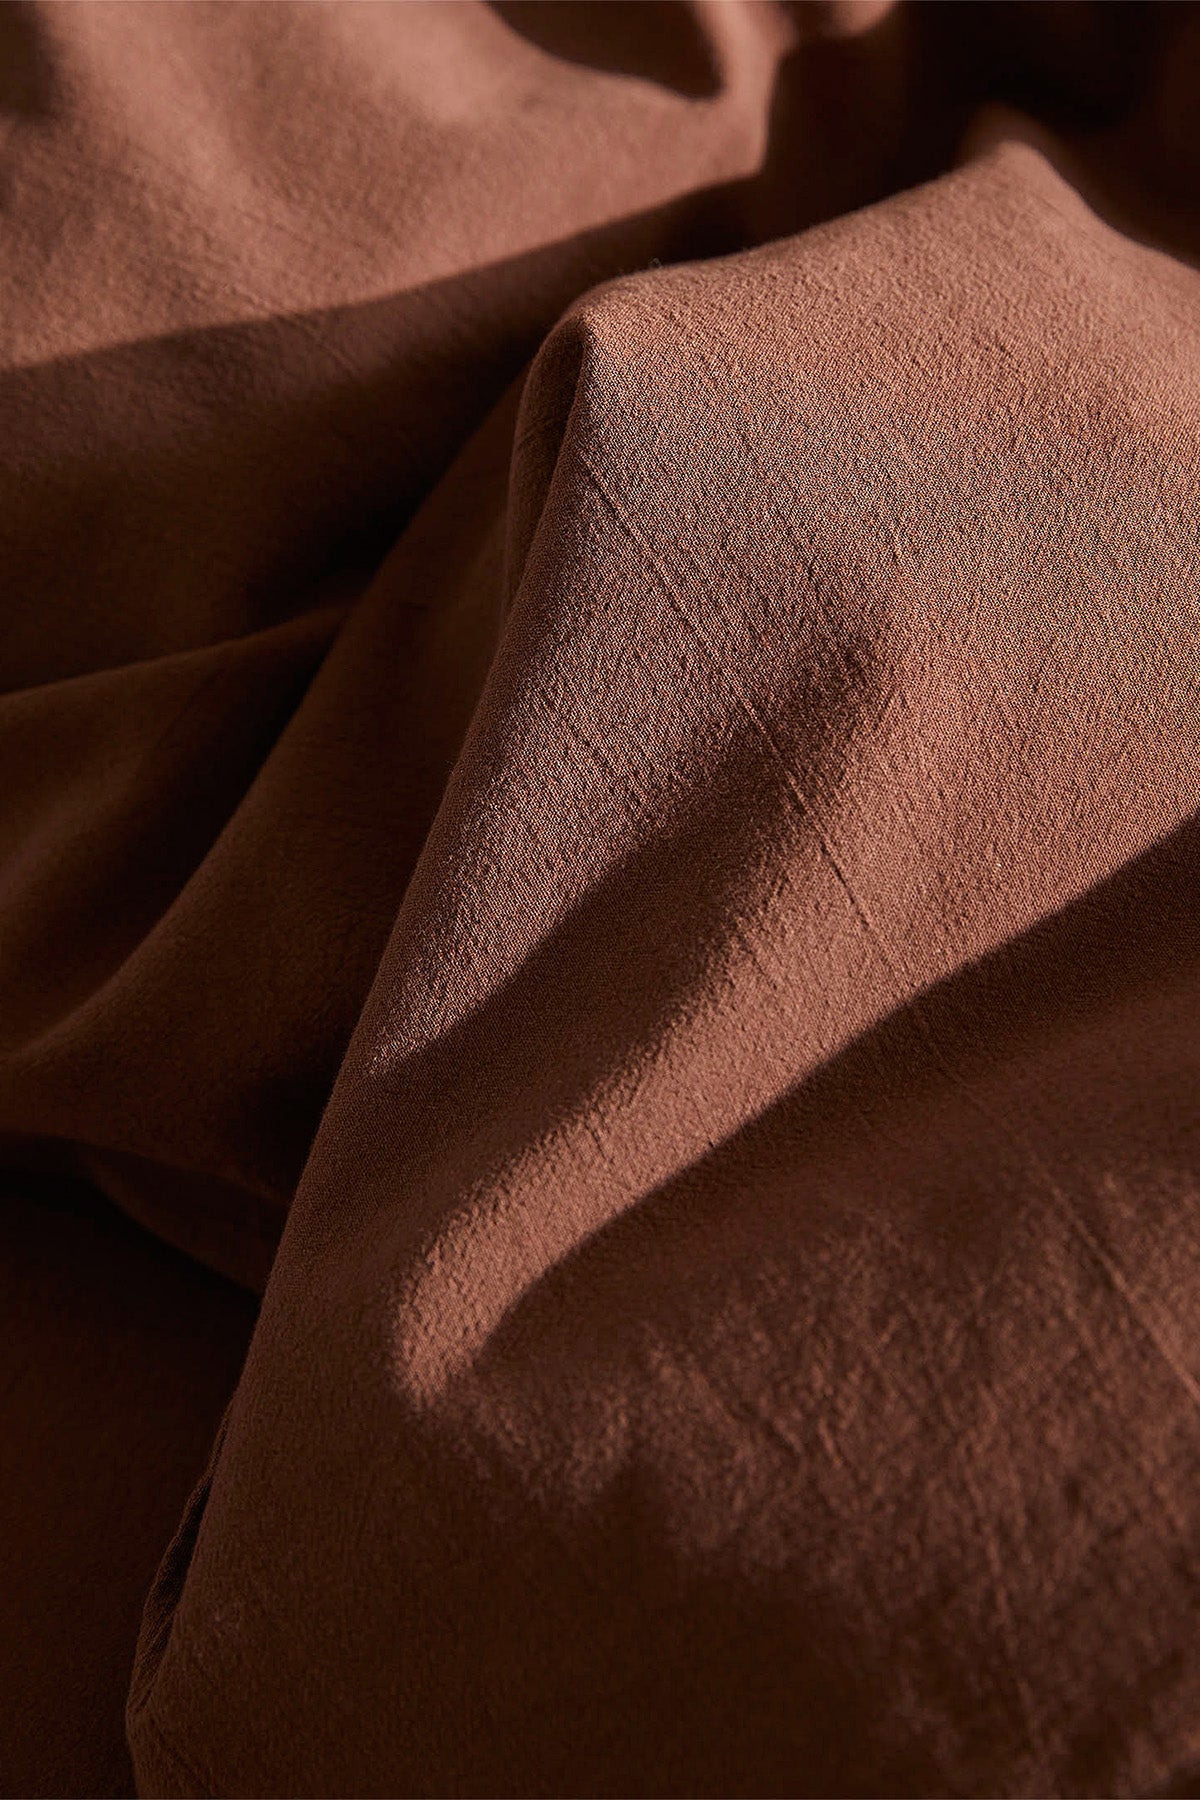 textile, single duvet cover, linen, duvet cover set, double duvet cover, bedroom linens, bedroom textile